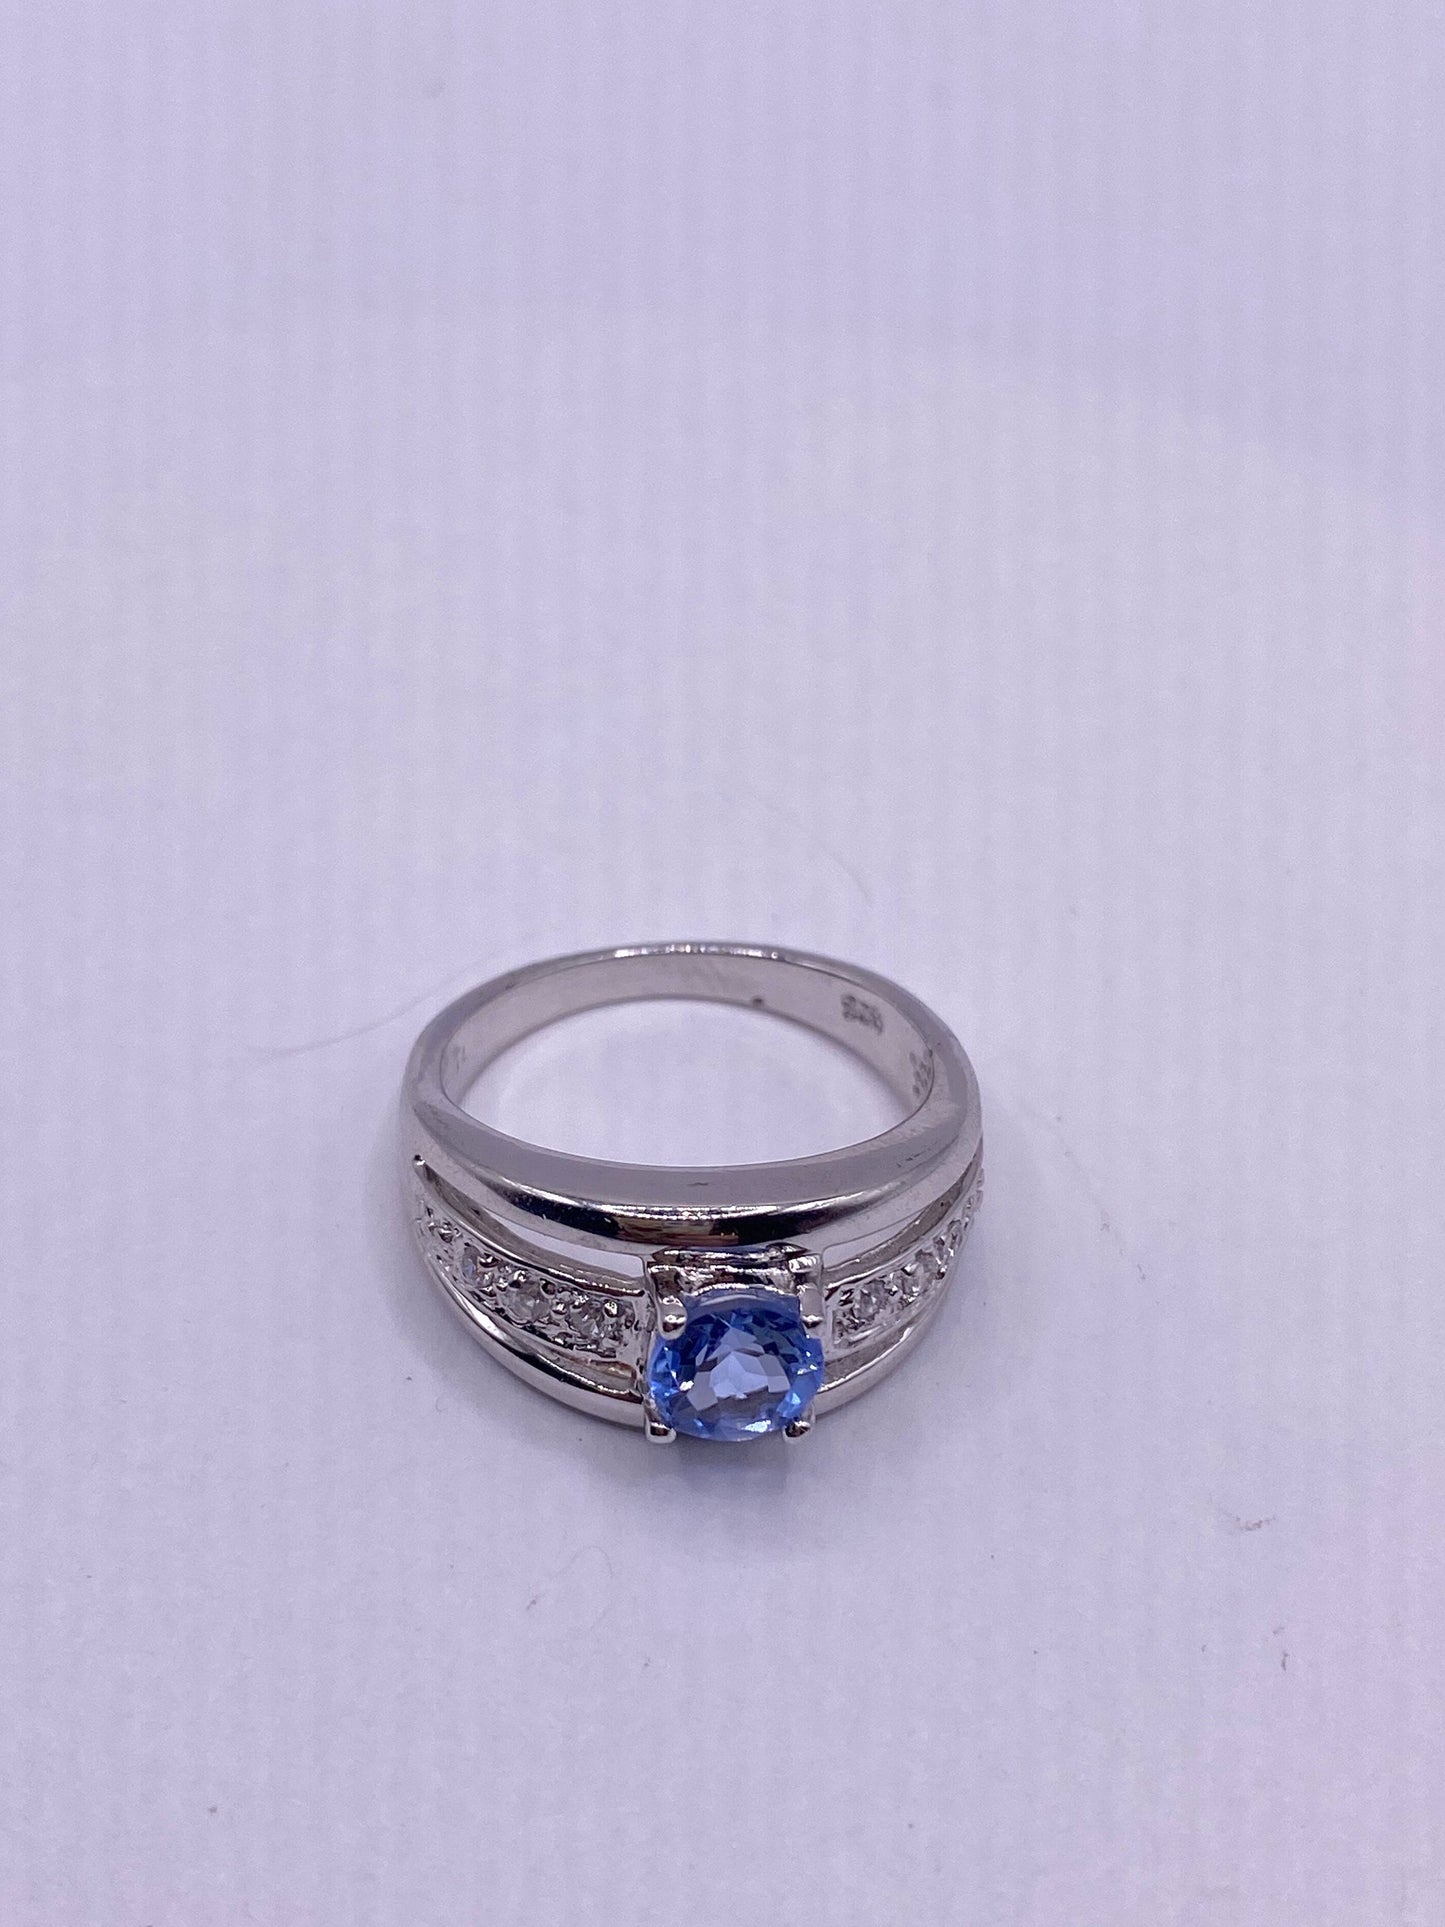 Vintage geniune blue topaz 925 sterling silver Cocktail Ring